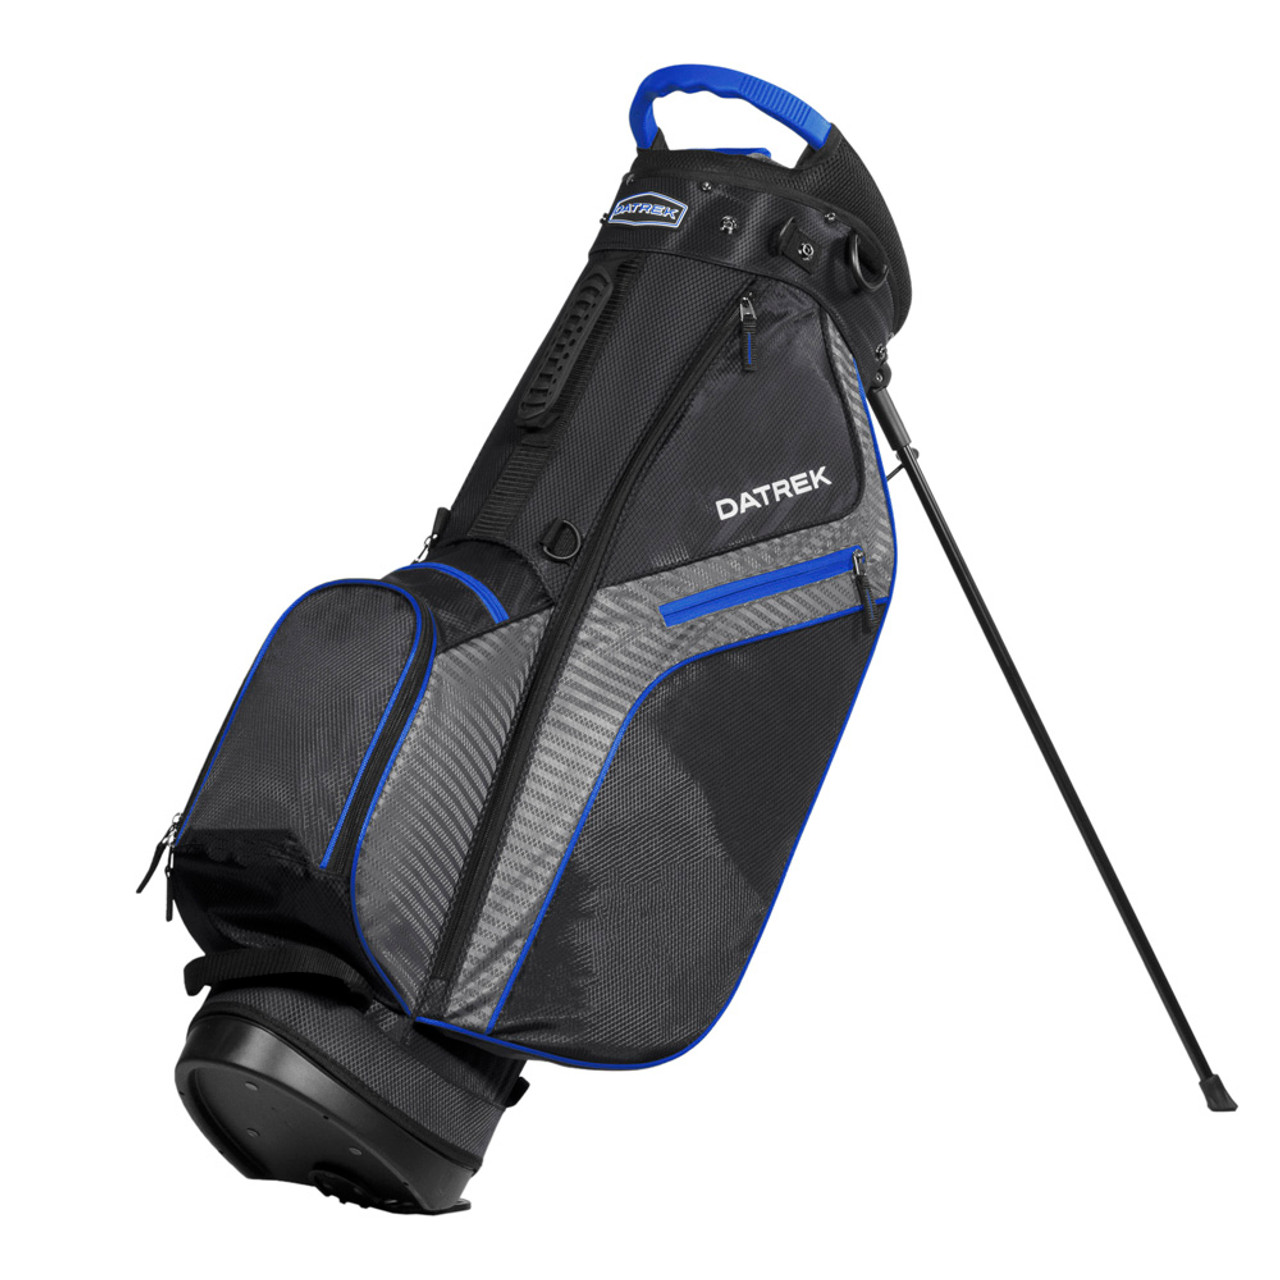 Taylormade Pro Cart Golf Bag (Royal)